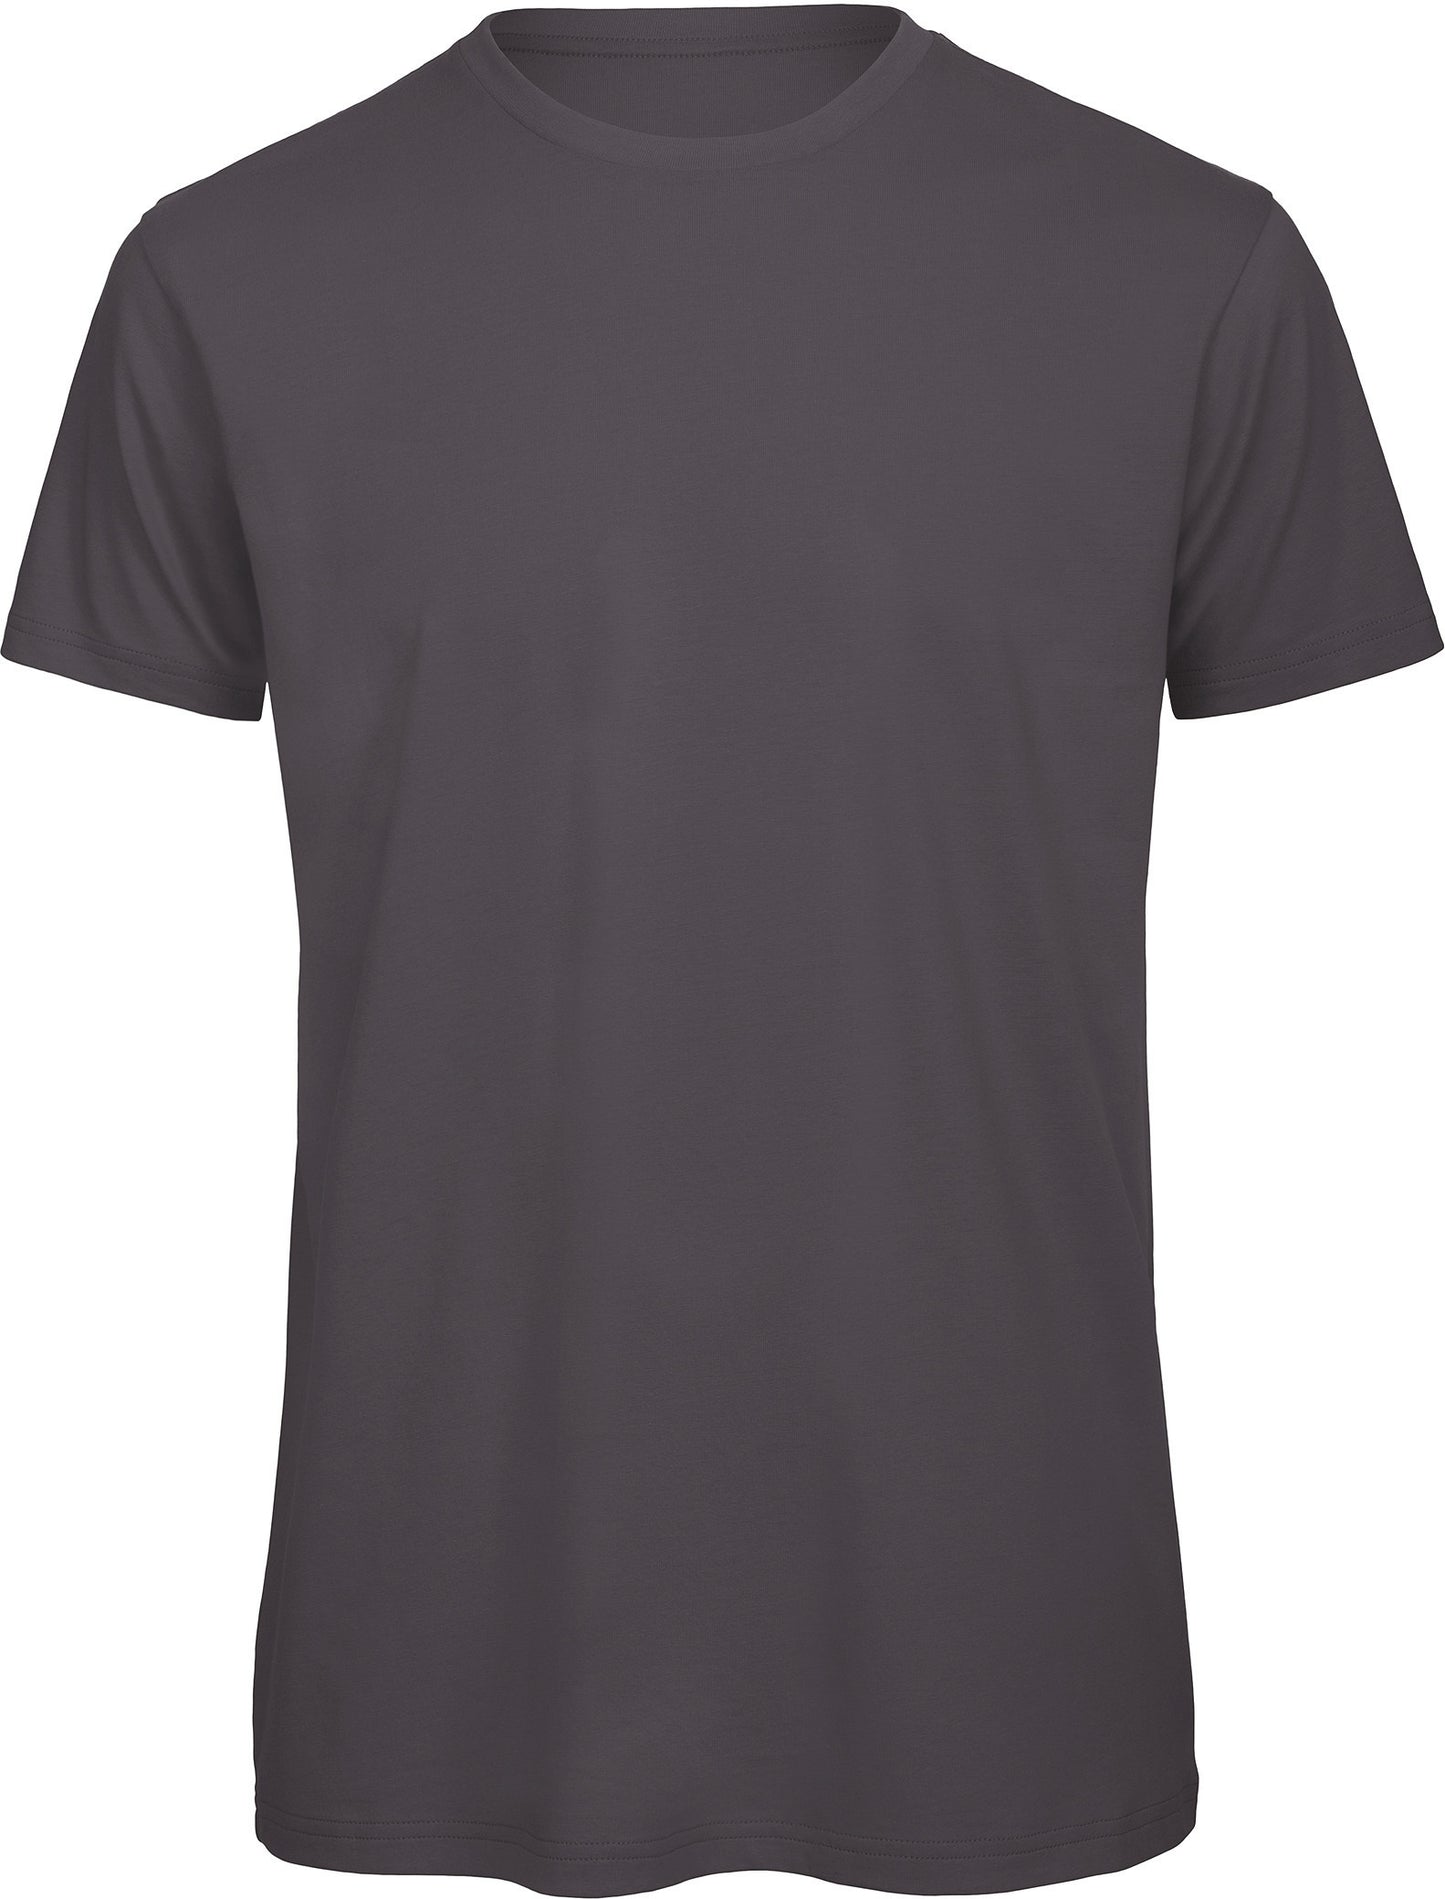 Pack createur - 10 t-shirts manches courtes + impression